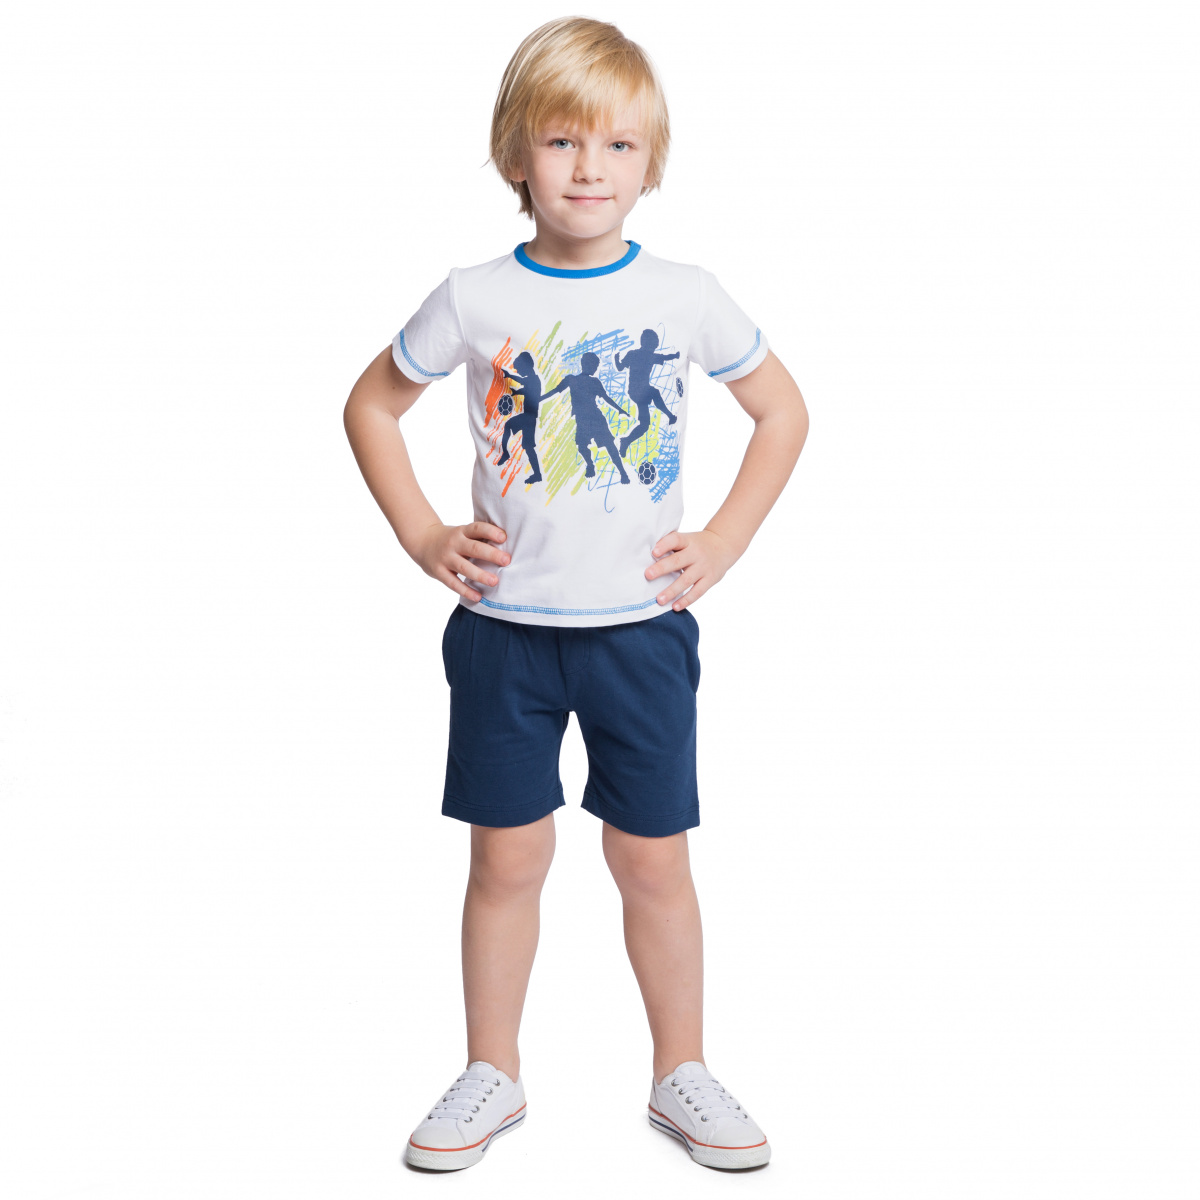 Шорты 5 лет. Спортивные шорты для мальчика. Мальчик в майке и шортах. Детские футболки шортики. Одежда для мальчиков шорты.